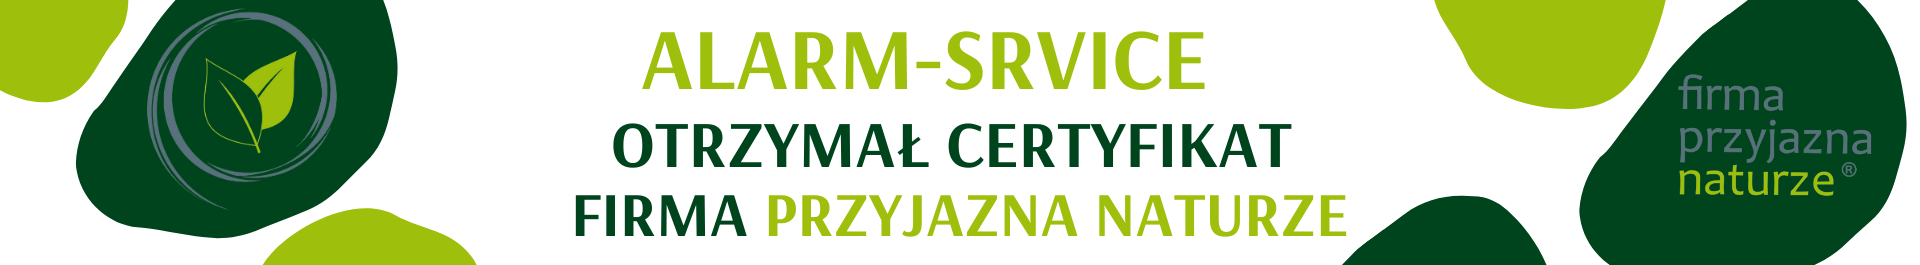 Jest nam niezmiernie miło poinformować, że firma Alarm-Service otrzymała certyfikat uczestnictwa w programie ekologicznej odpowiedzialności przedsiębiorstw Firma Przyjazna Naturze. 